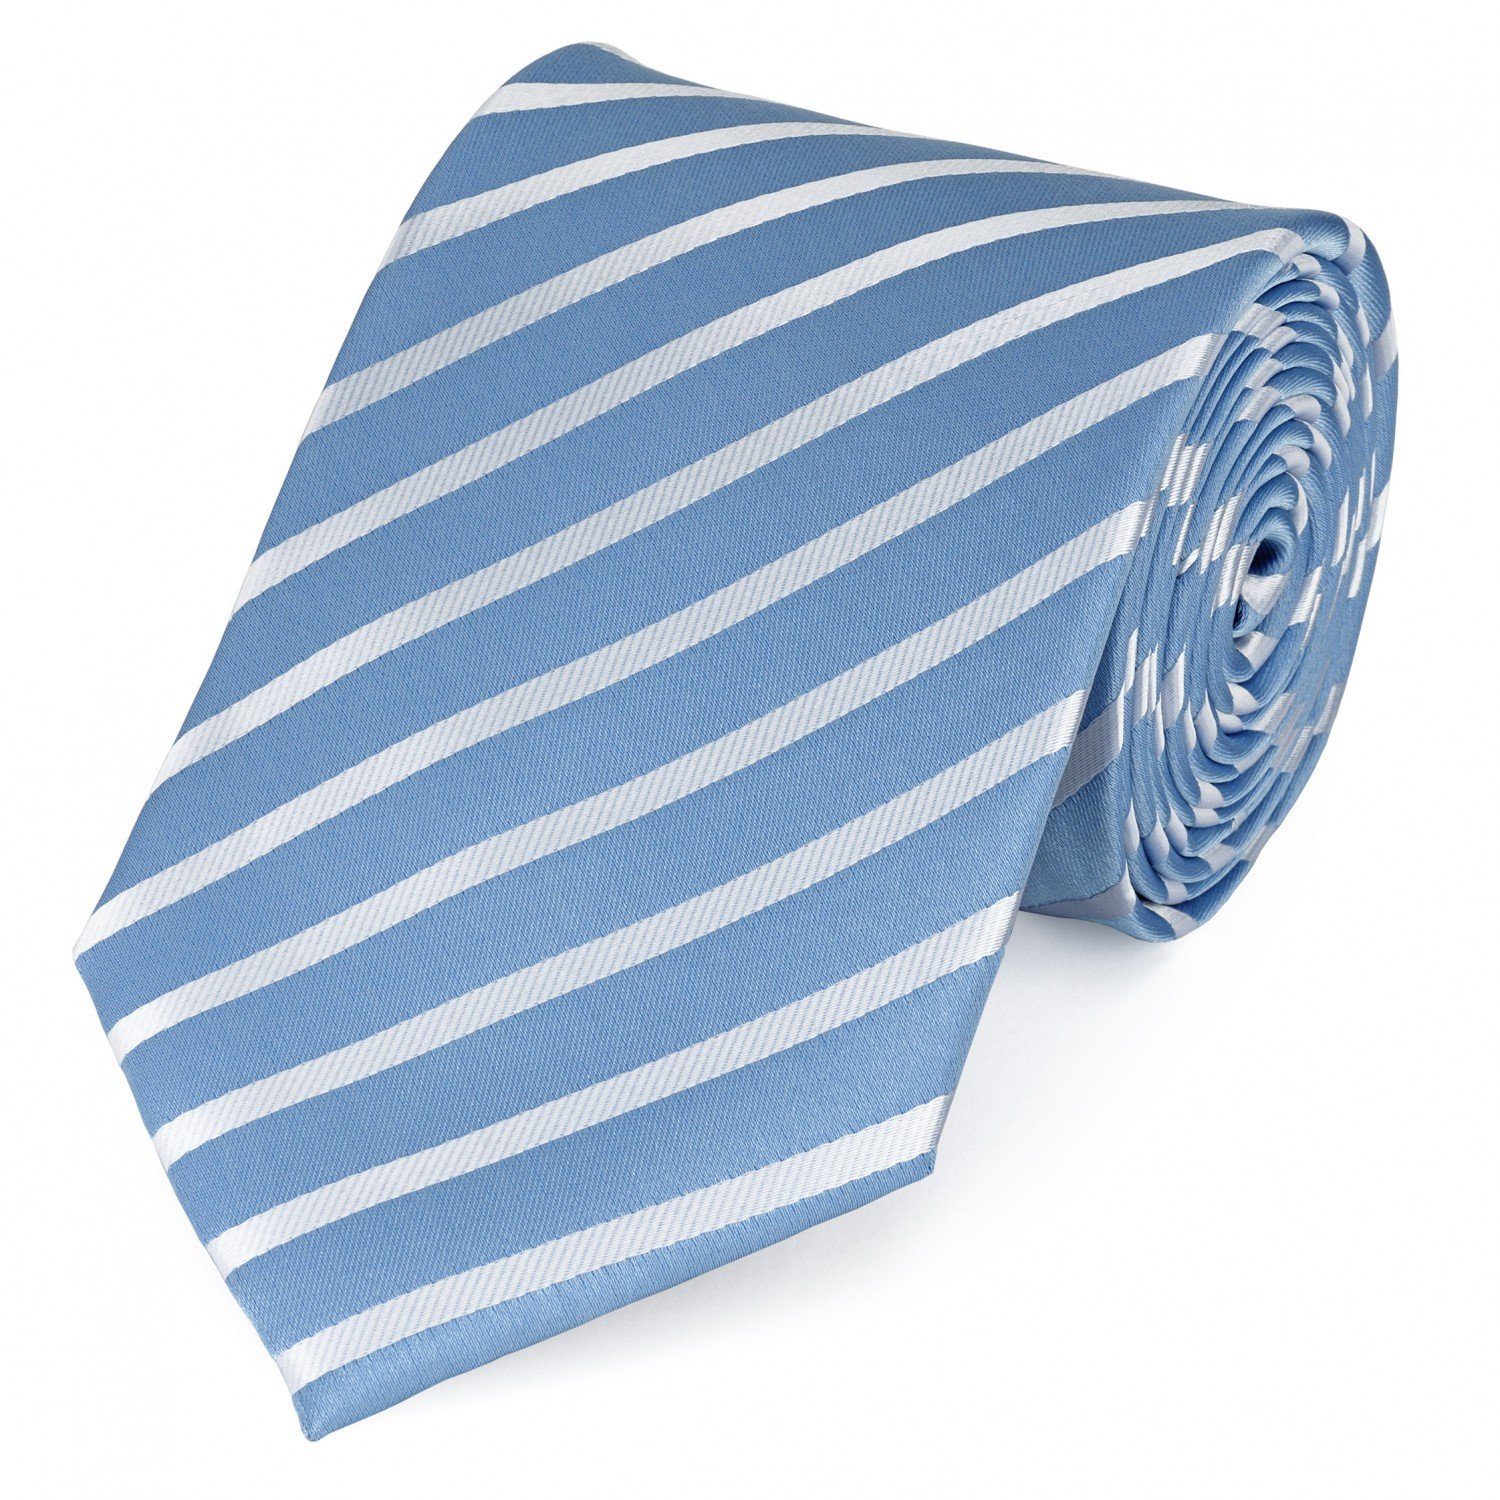 Fabio Farini Krawatte Herren Krawatte Blautöne - verschiedene Blaue Männer Schlips in 8cm (ohne Box, Gestreift) Breit (8cm), Blau Weiß Streifen - Swedish Blue/Eastern Sky